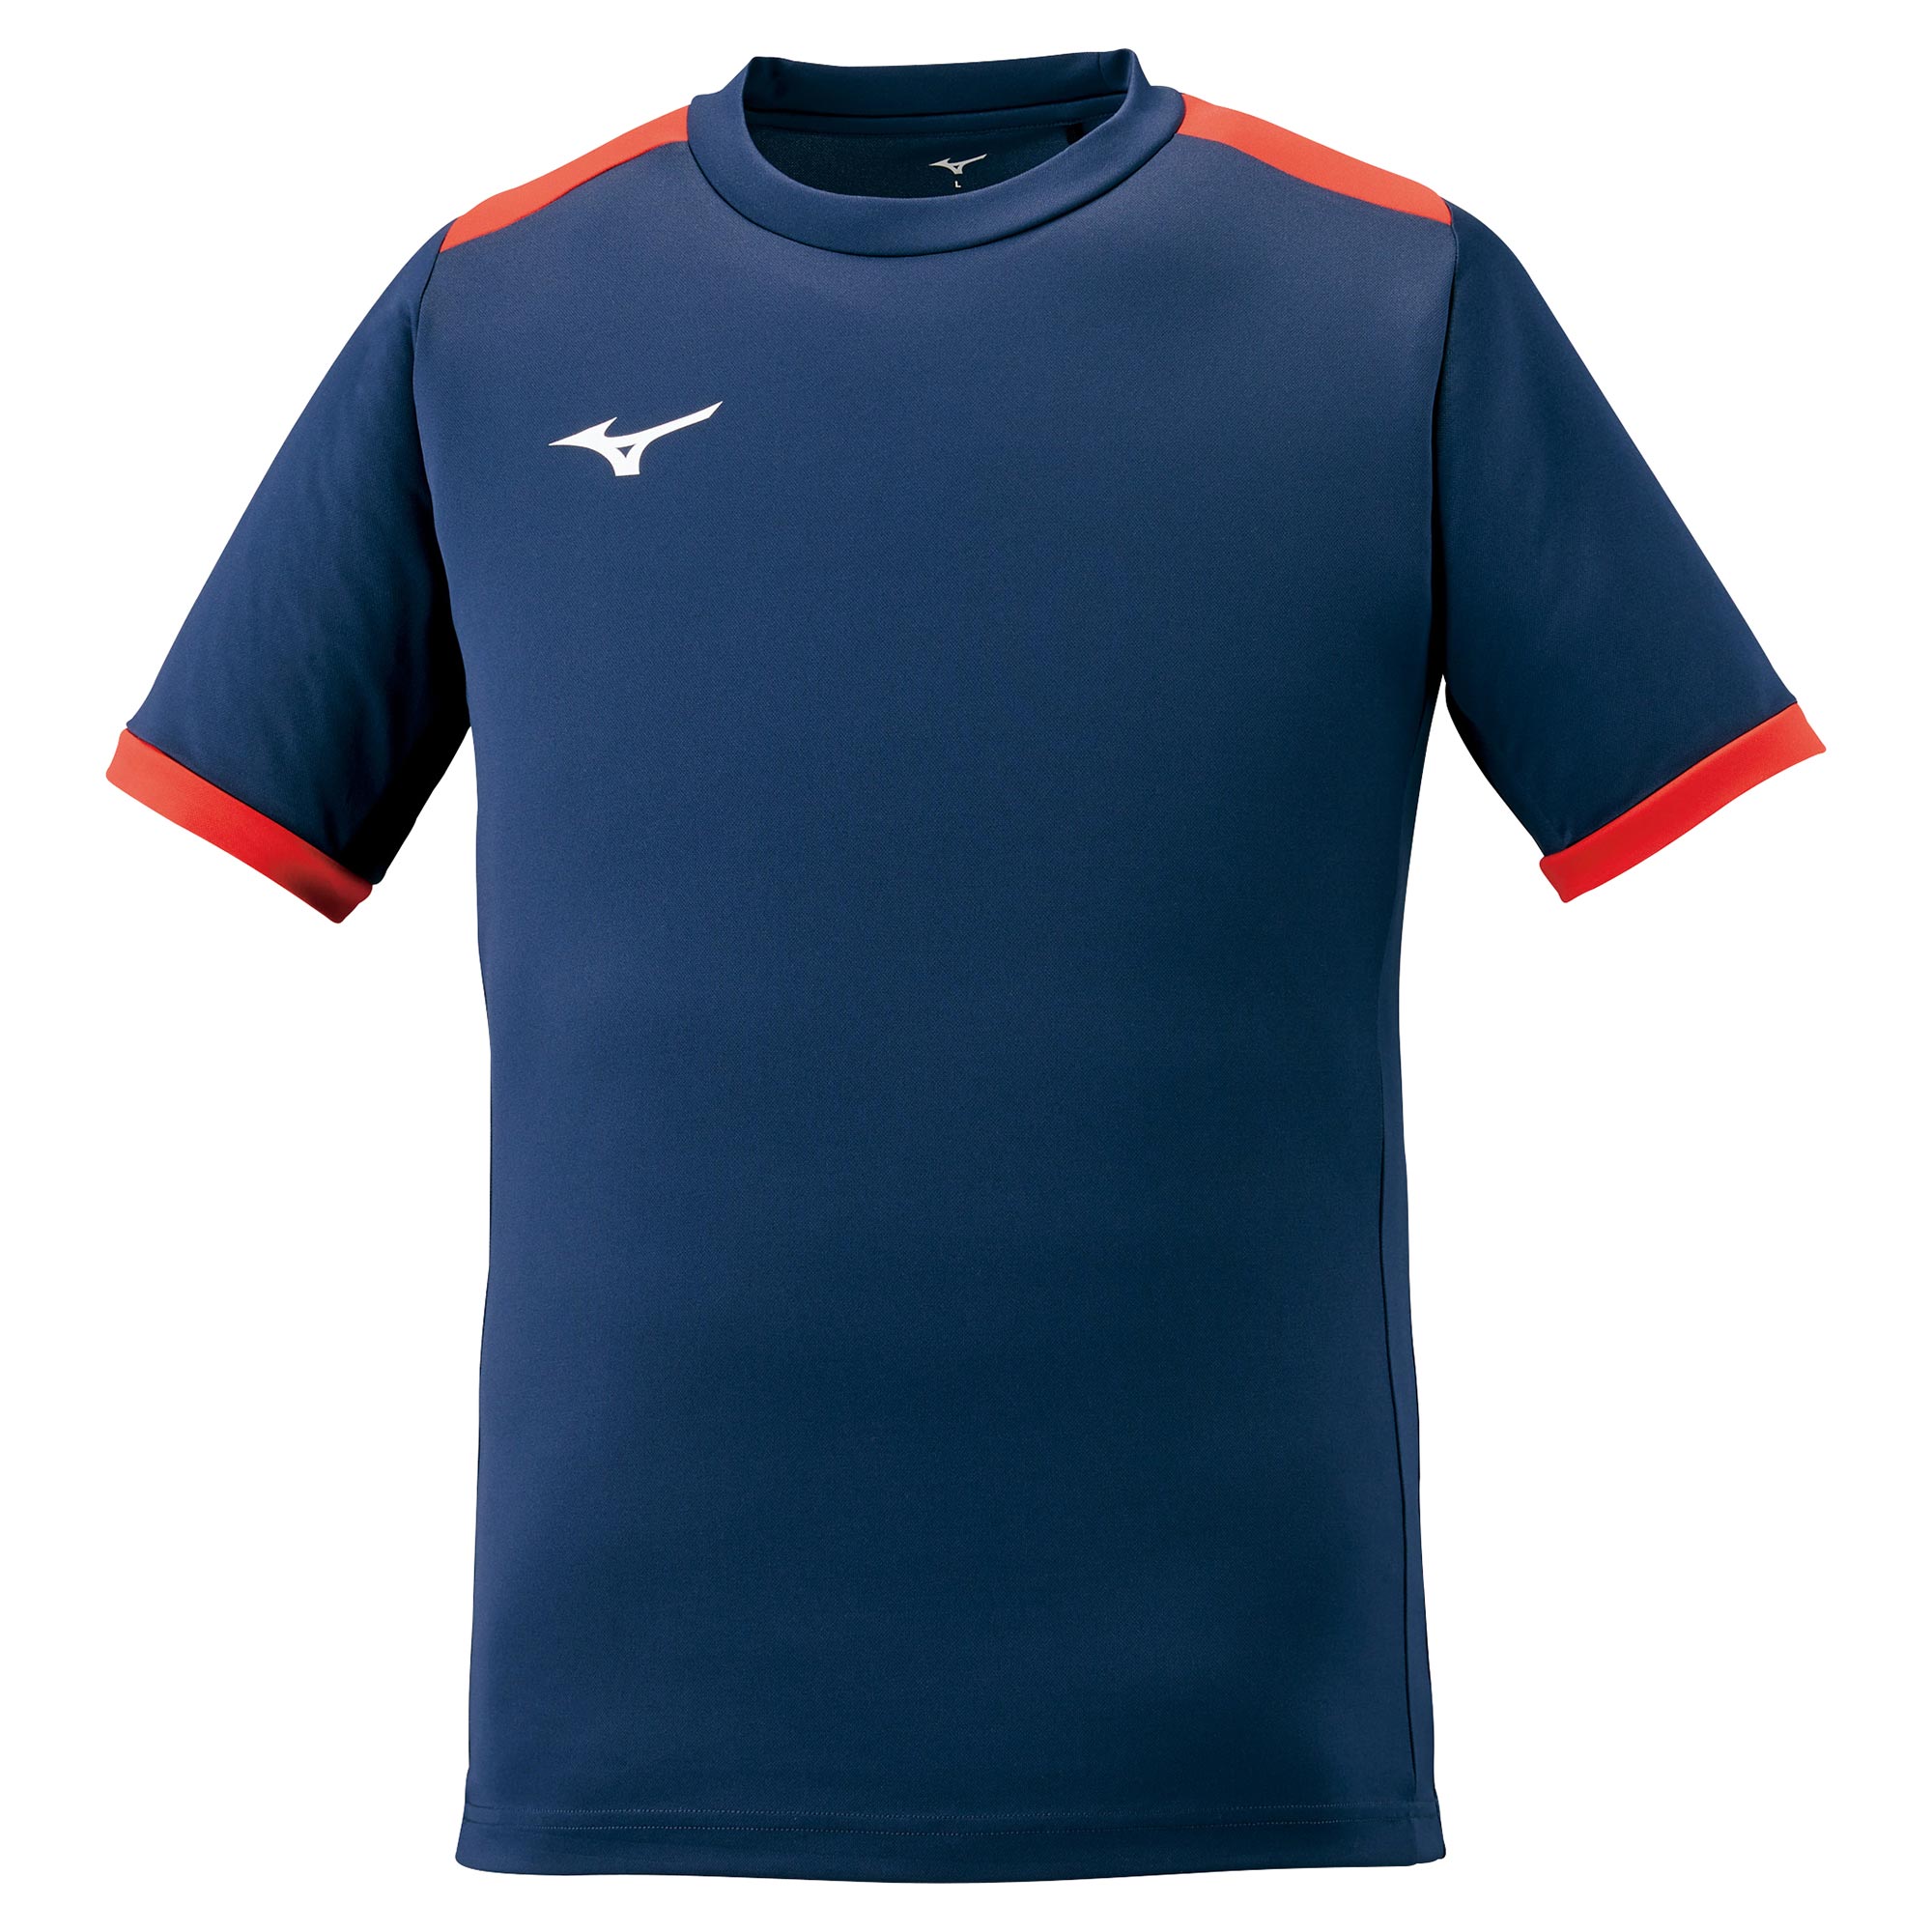 フィールドシャツ[ユニセックス]|P2MA1020|ウエア|サッカー